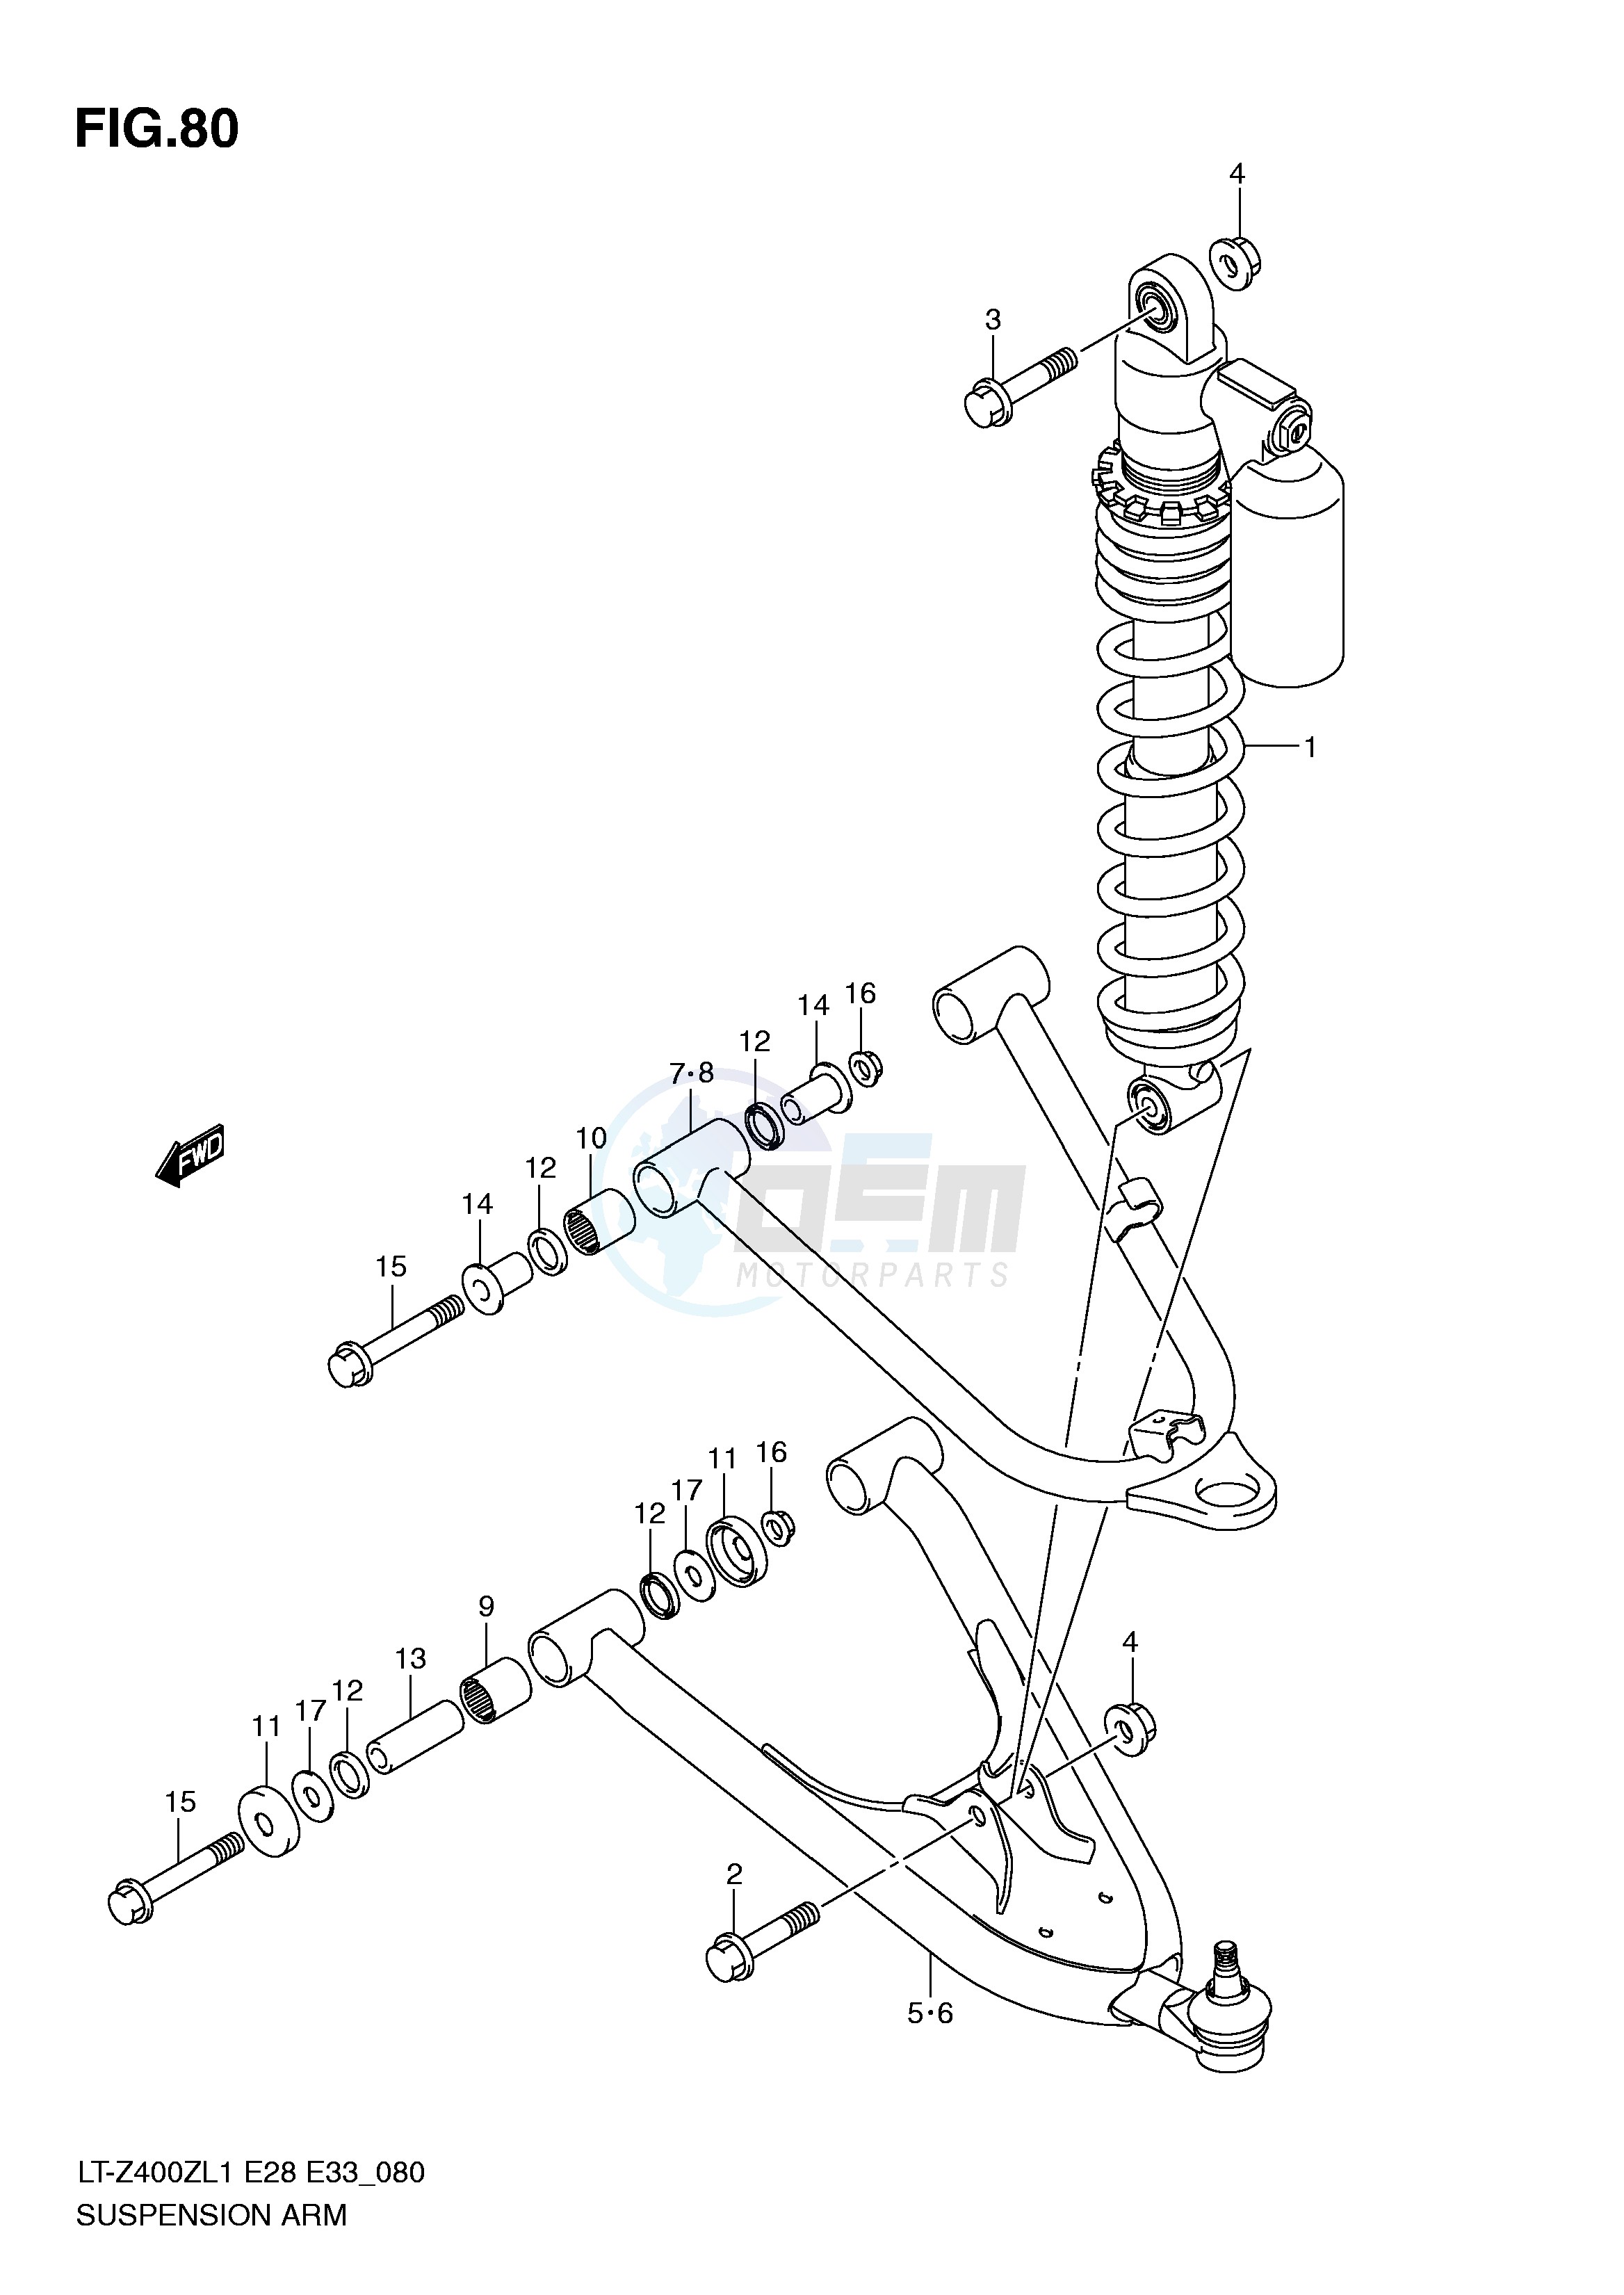 SUSPENSION ARM (LT-Z400ZL1 E33) image